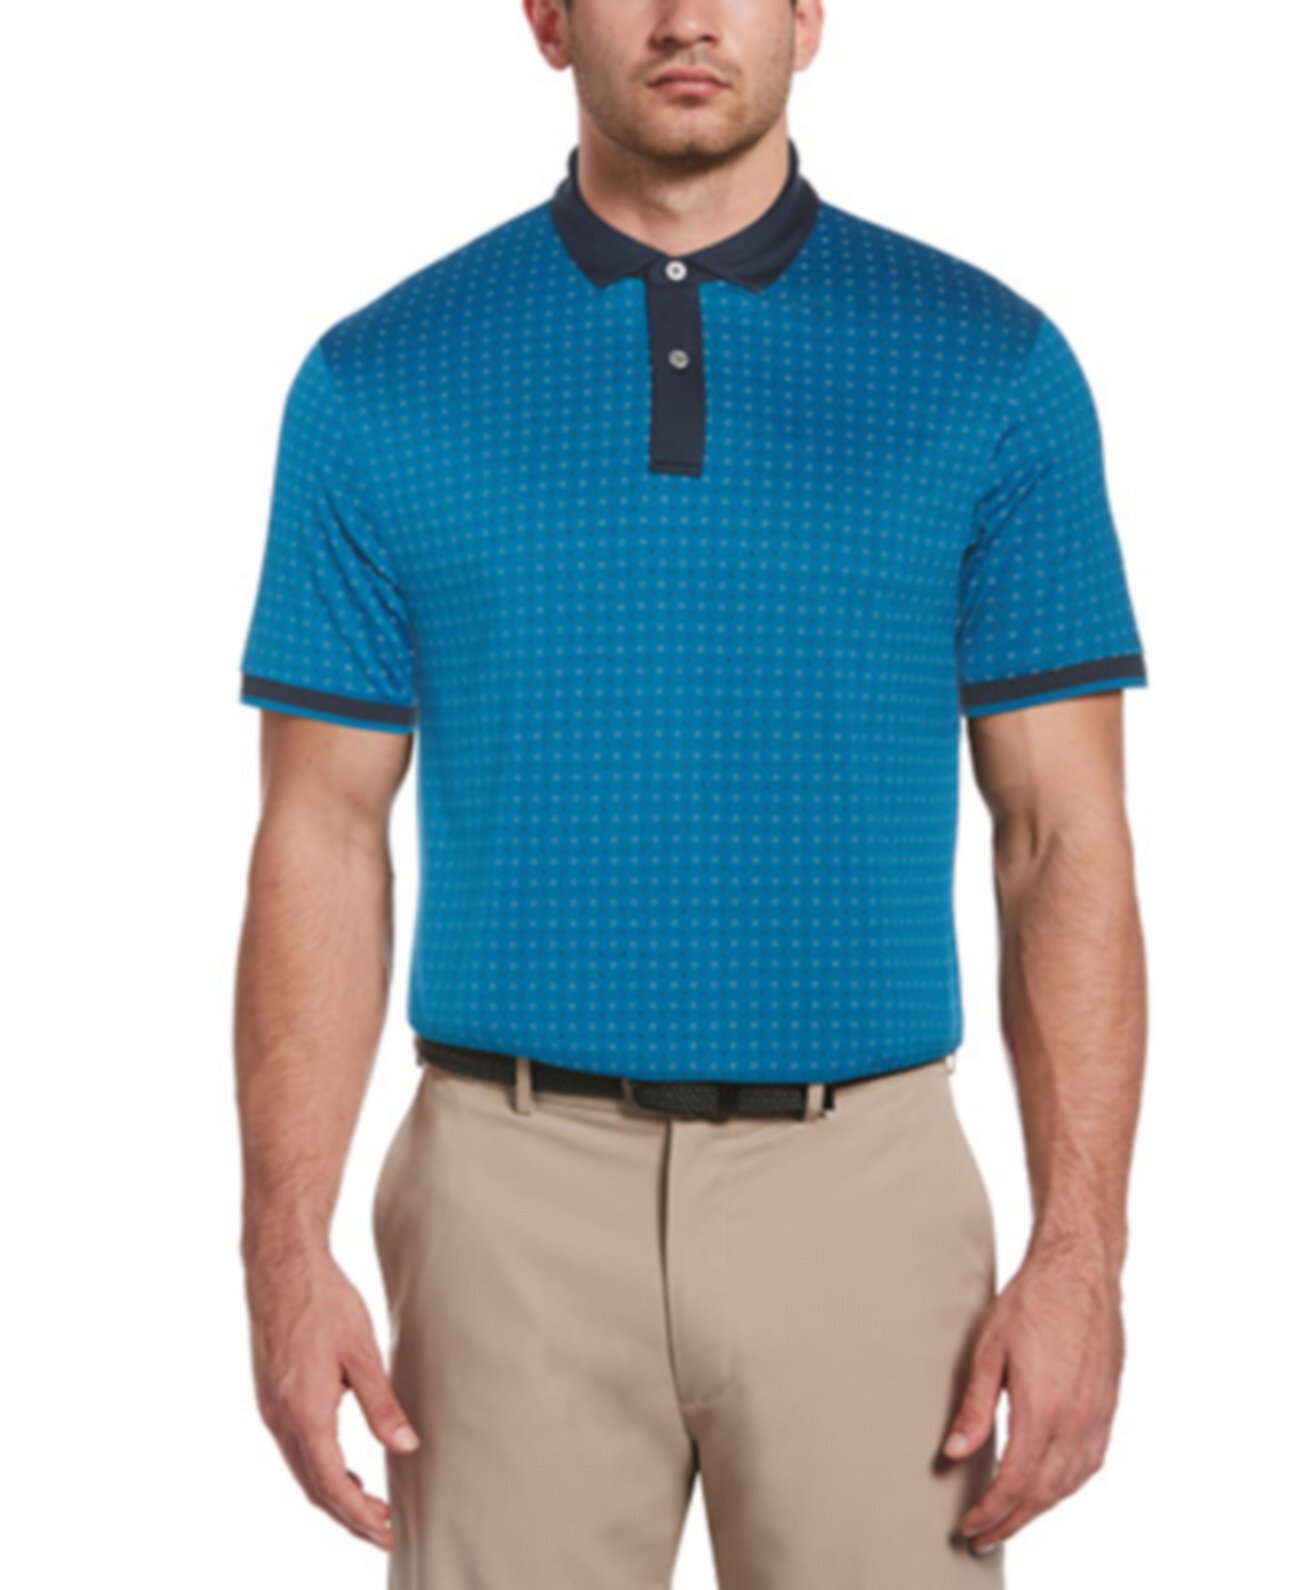 Мужская футболка-поло с экологичным принтом PGA TOUR